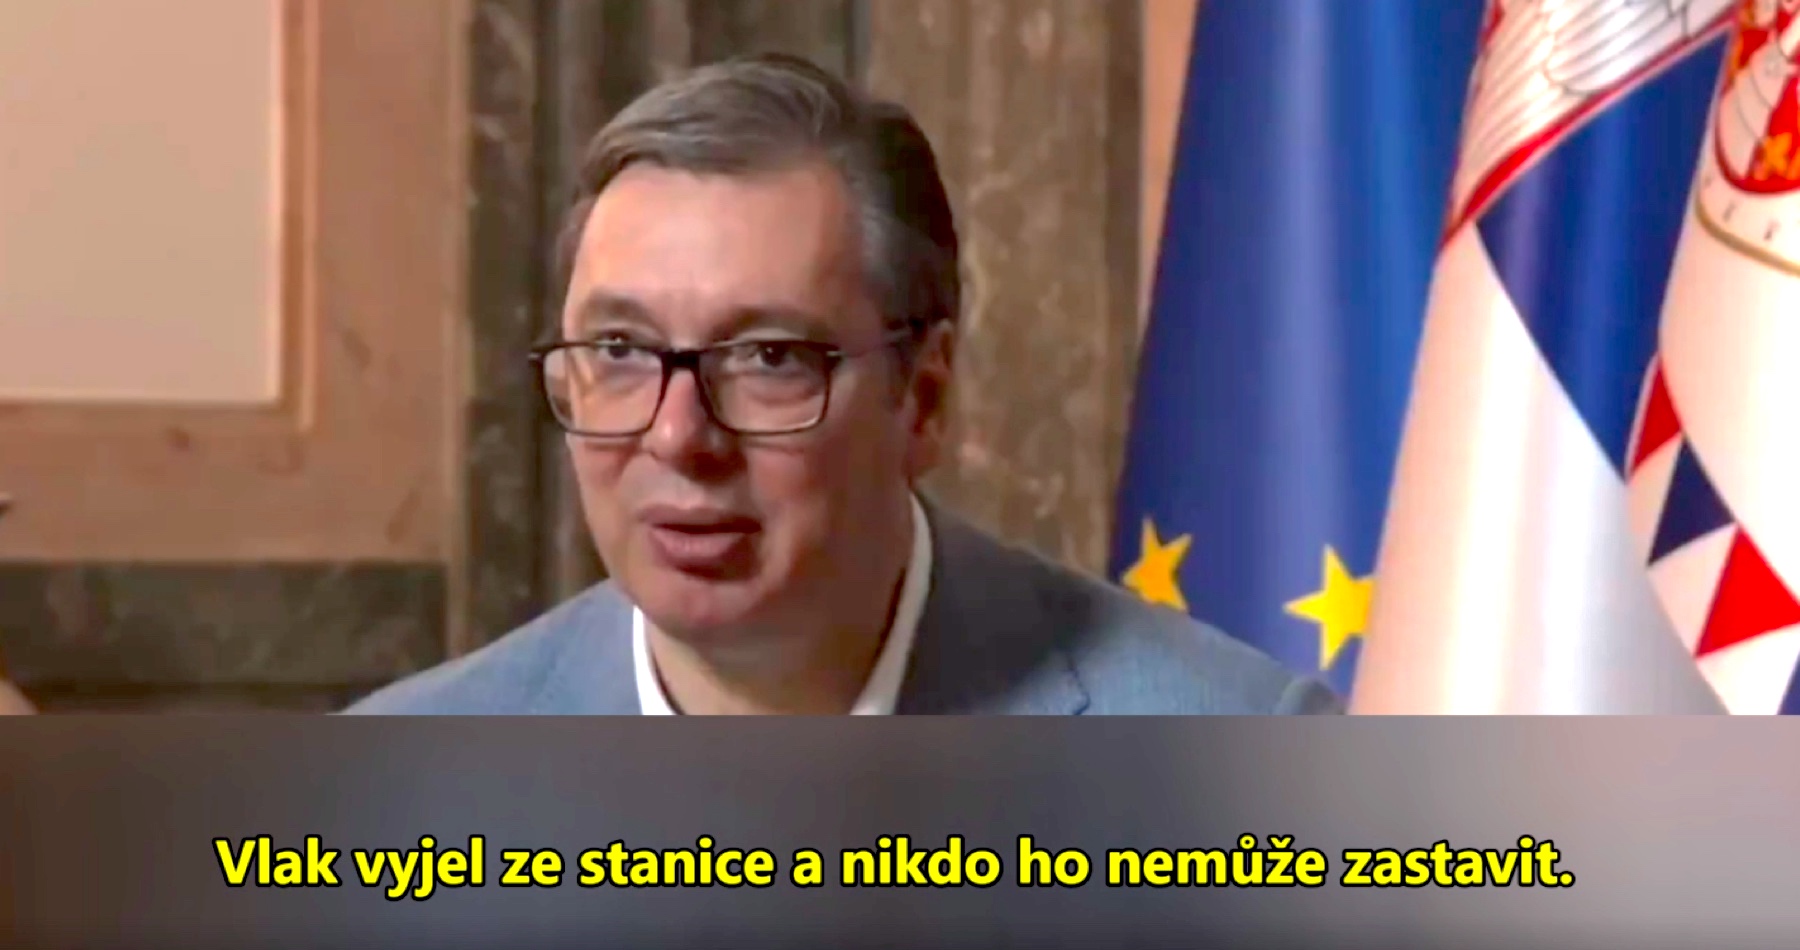 VIDEO: Srbský prezident Aleksandar Vučić očekává v Evropě velký konflikt mezi Ruskem a NATO. „Vlak vyjel ze stanice a nikdo ho nemůže zastavit. A podle toho to také vypadá a já věřím, že se blížíme k posledním dnům možného promyšlení a přehodnocení všeho, co se na Ukrajině děje,“ prohlásil